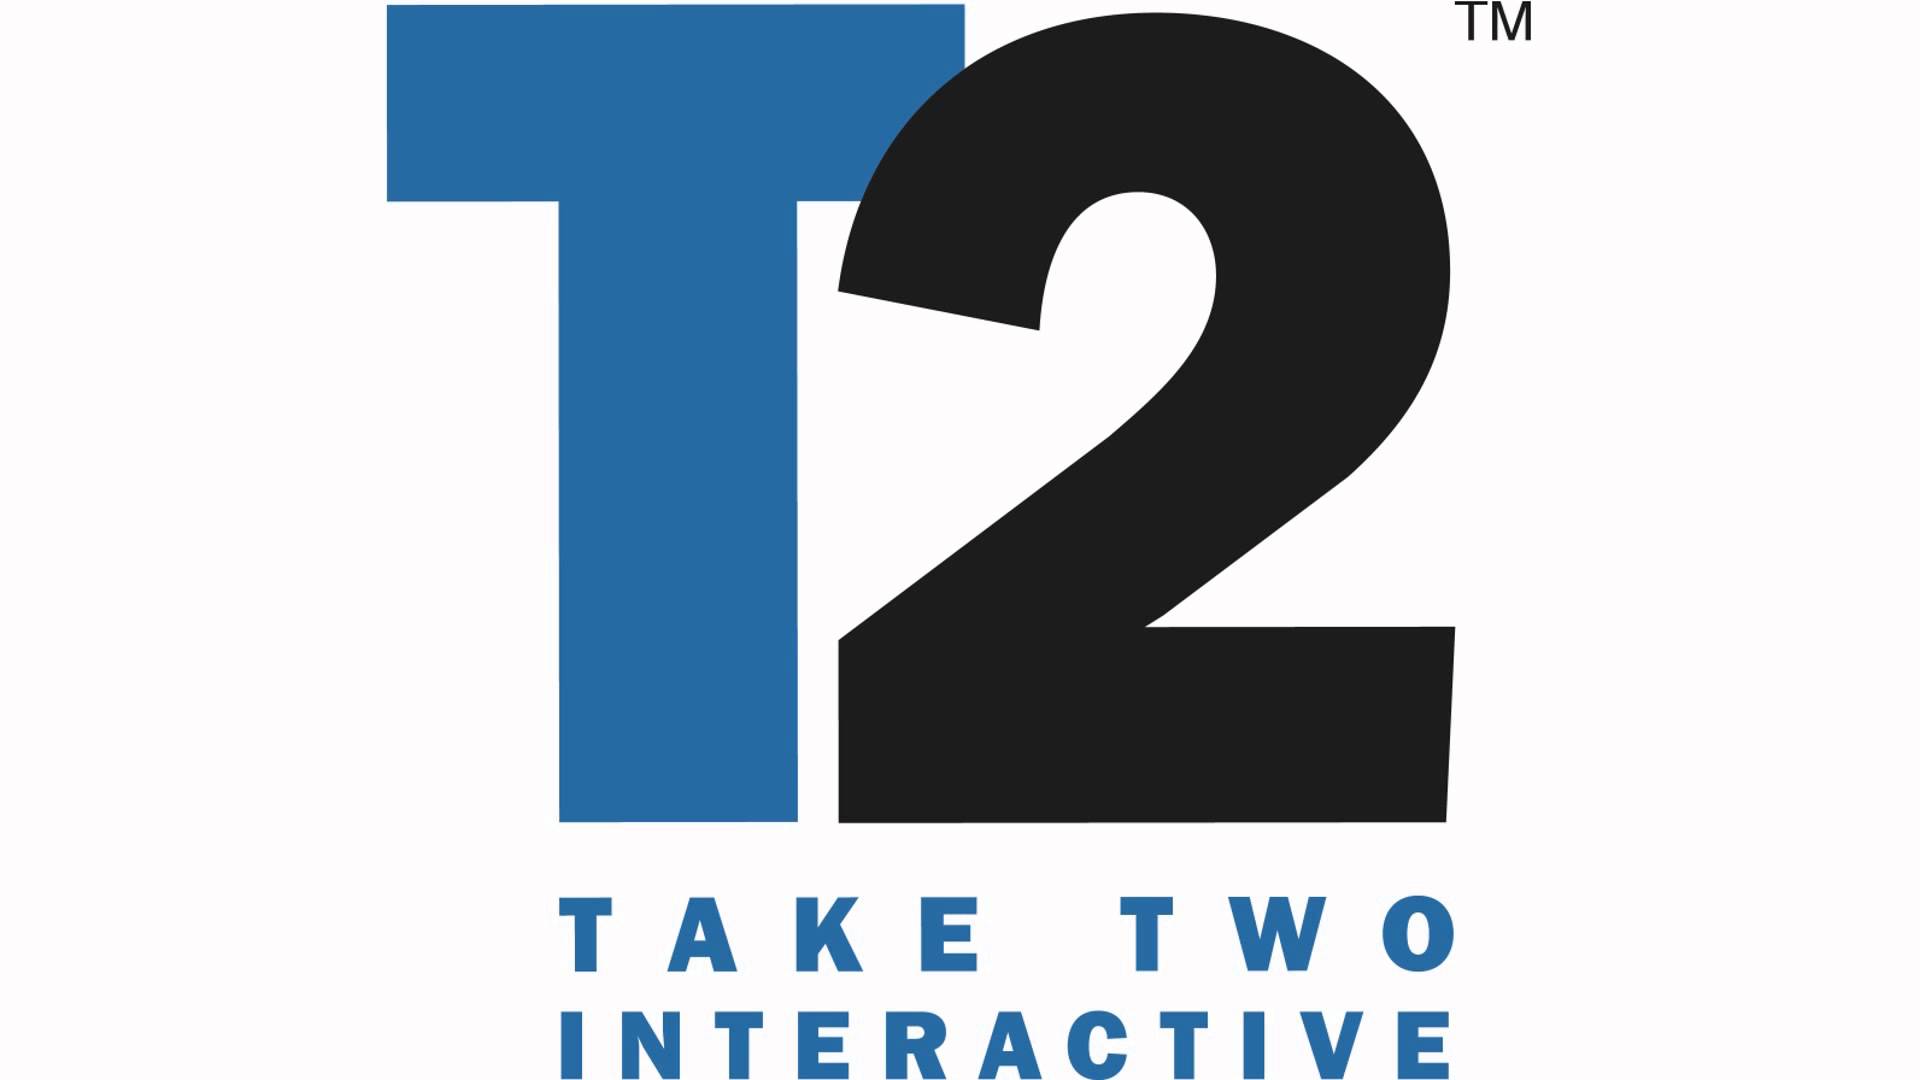 Take-Two มีแผนจะเพิ่มเกม VR ให้มากขึ้นกว่านี้ในอนาคต